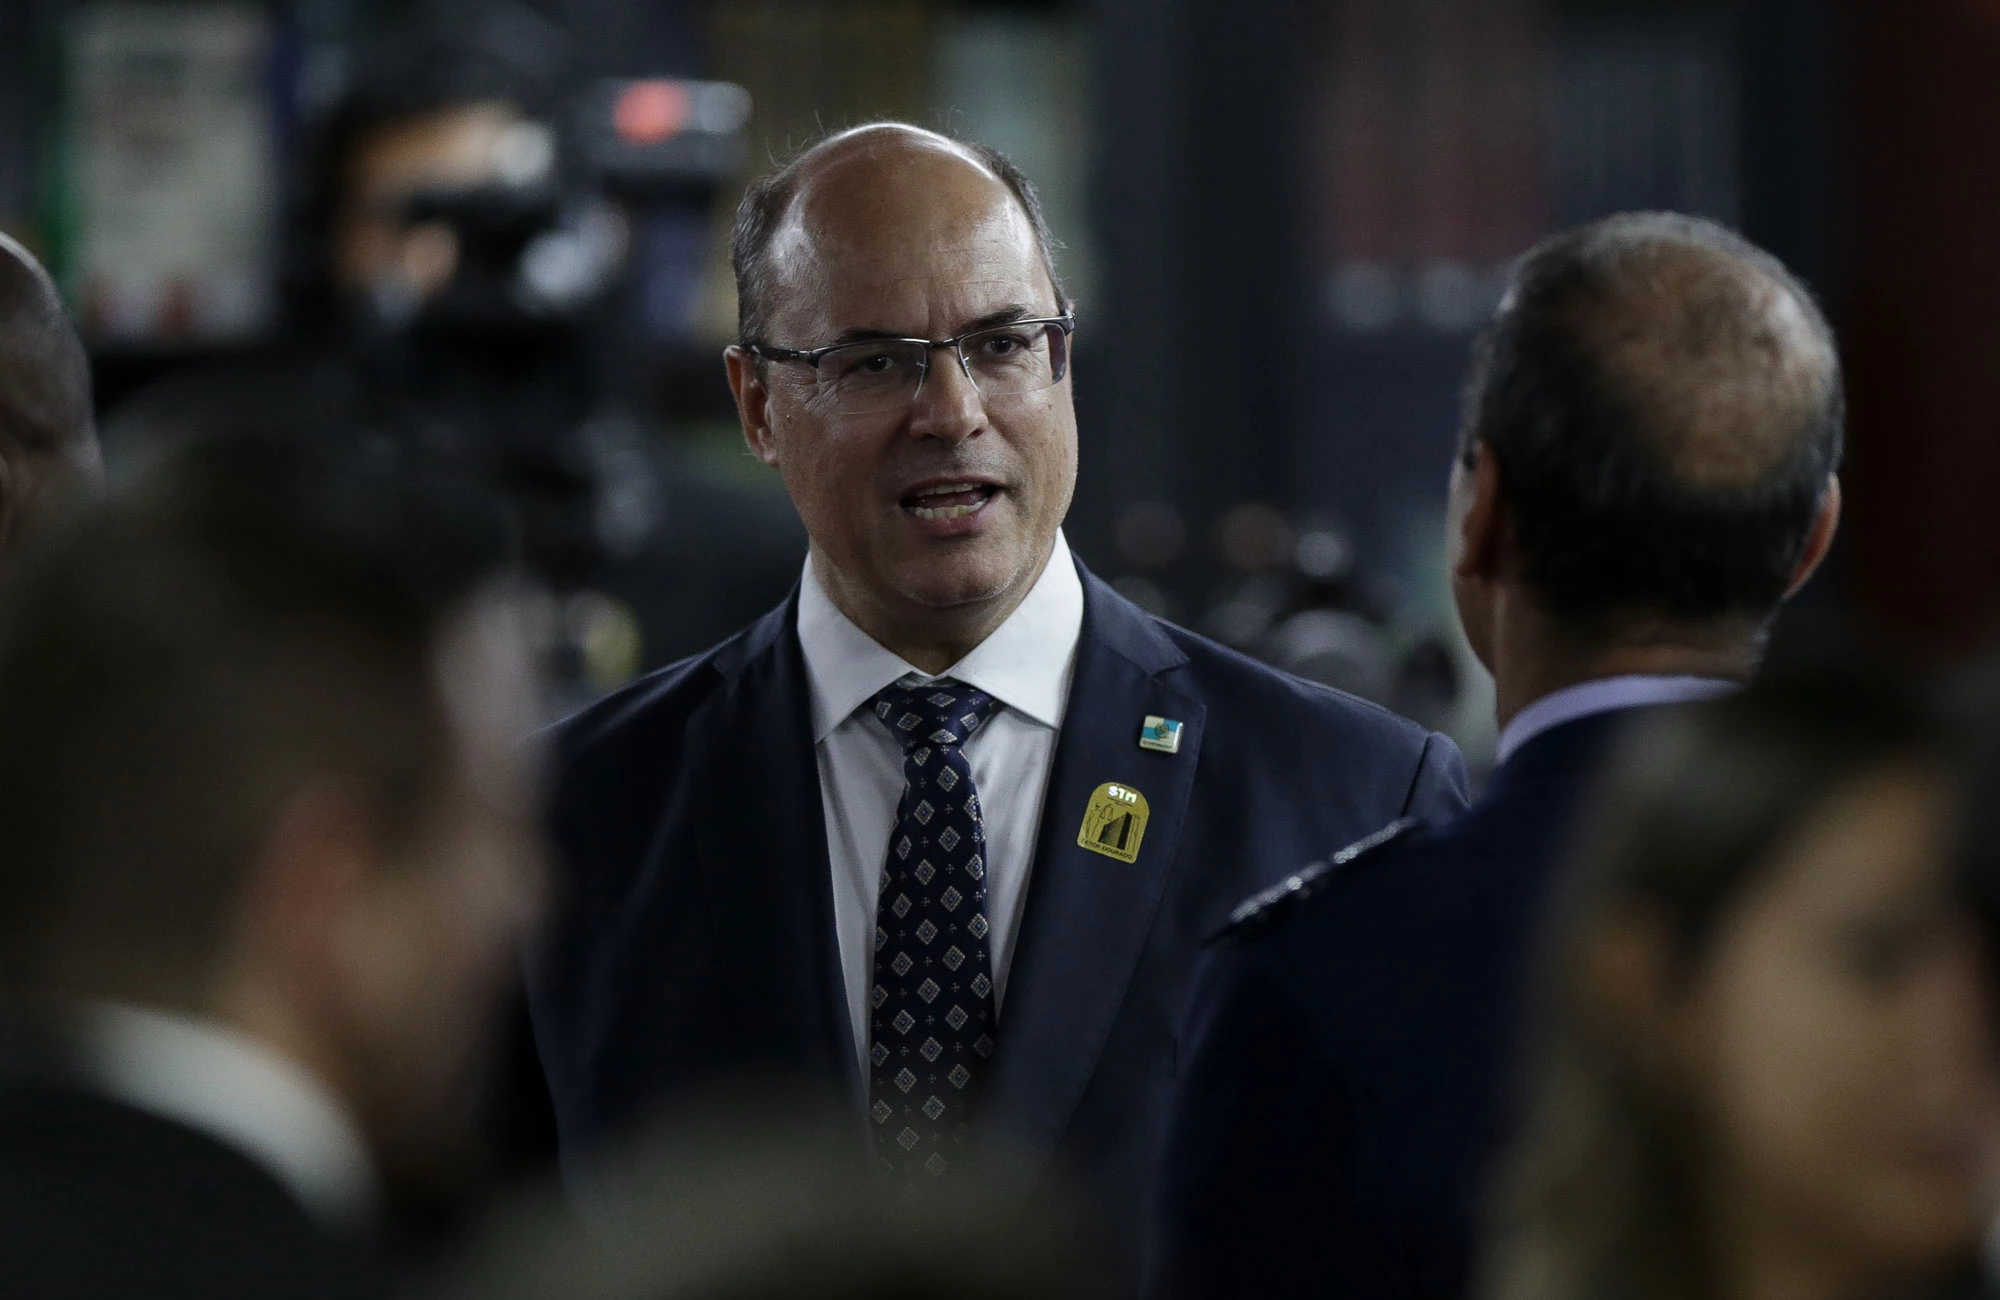 *ARQUIVO* BRASÍLIA, DF, 19.03.2019 - O governador do Rio de Janeiro, Wilson Witze. (Foto: Pedro Ladeira/Folhapress)